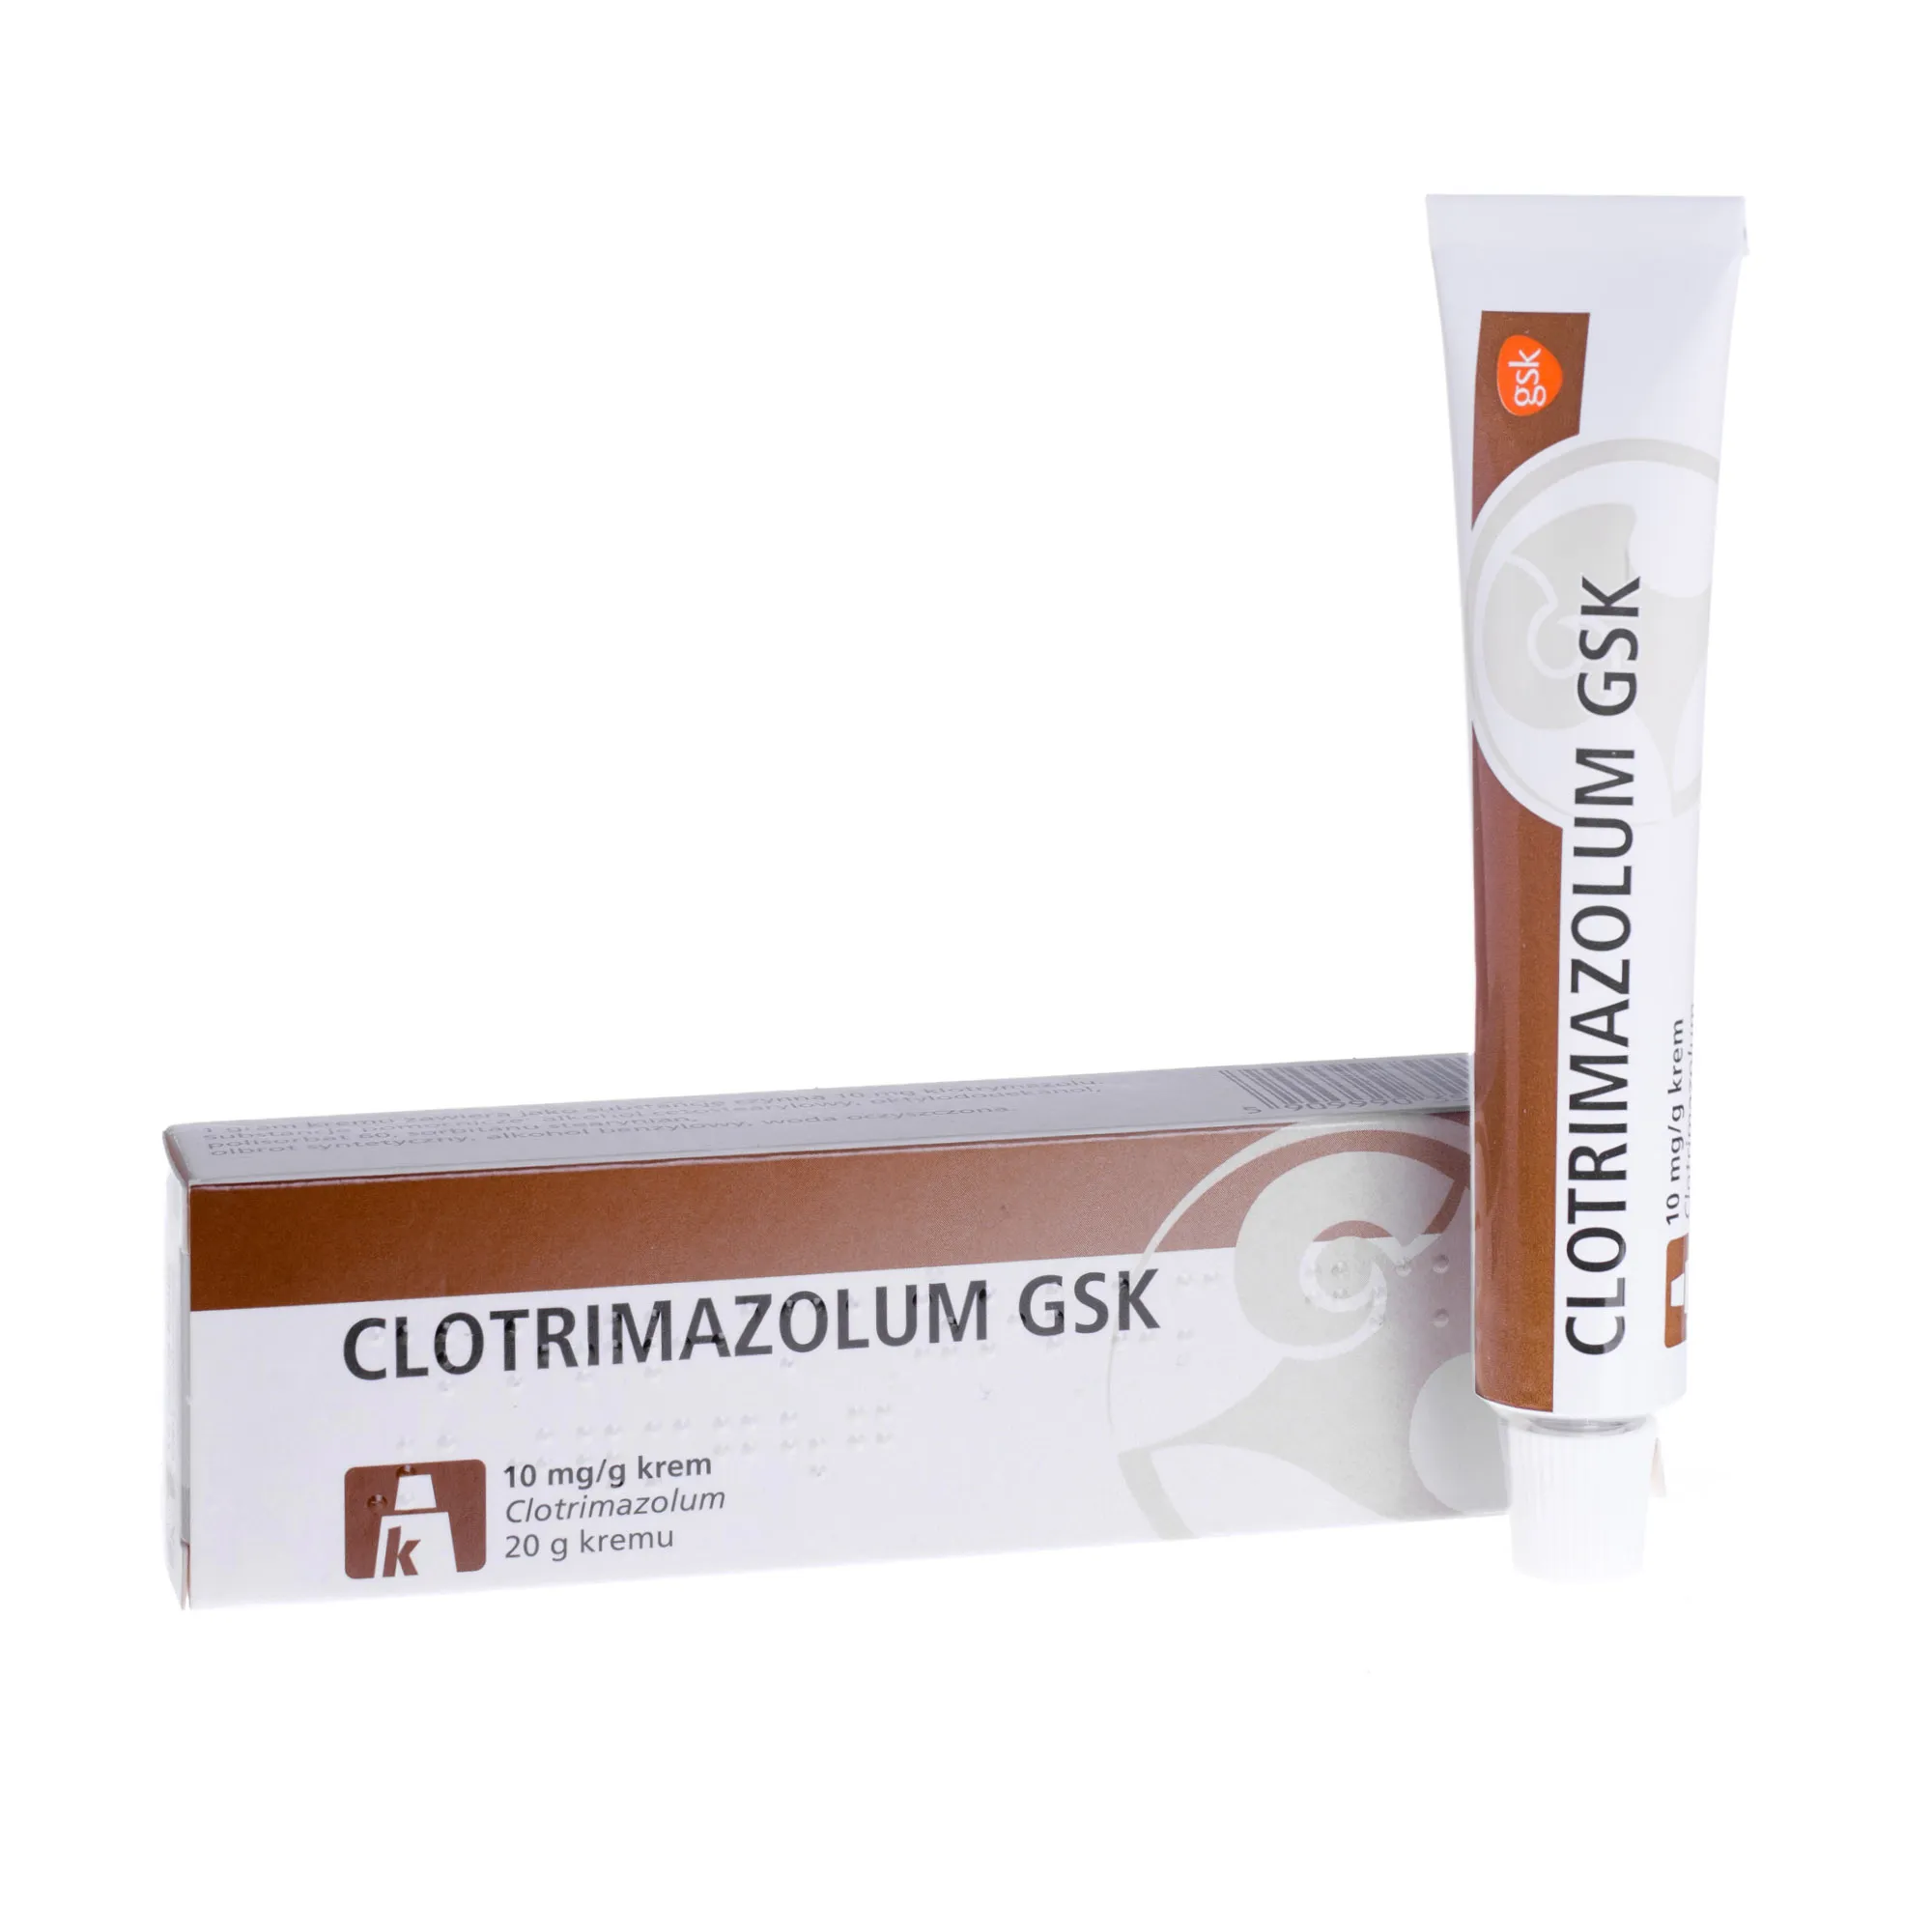 Clotrimazolum GSK, krem przeciwgrzybiczy, 20 g 